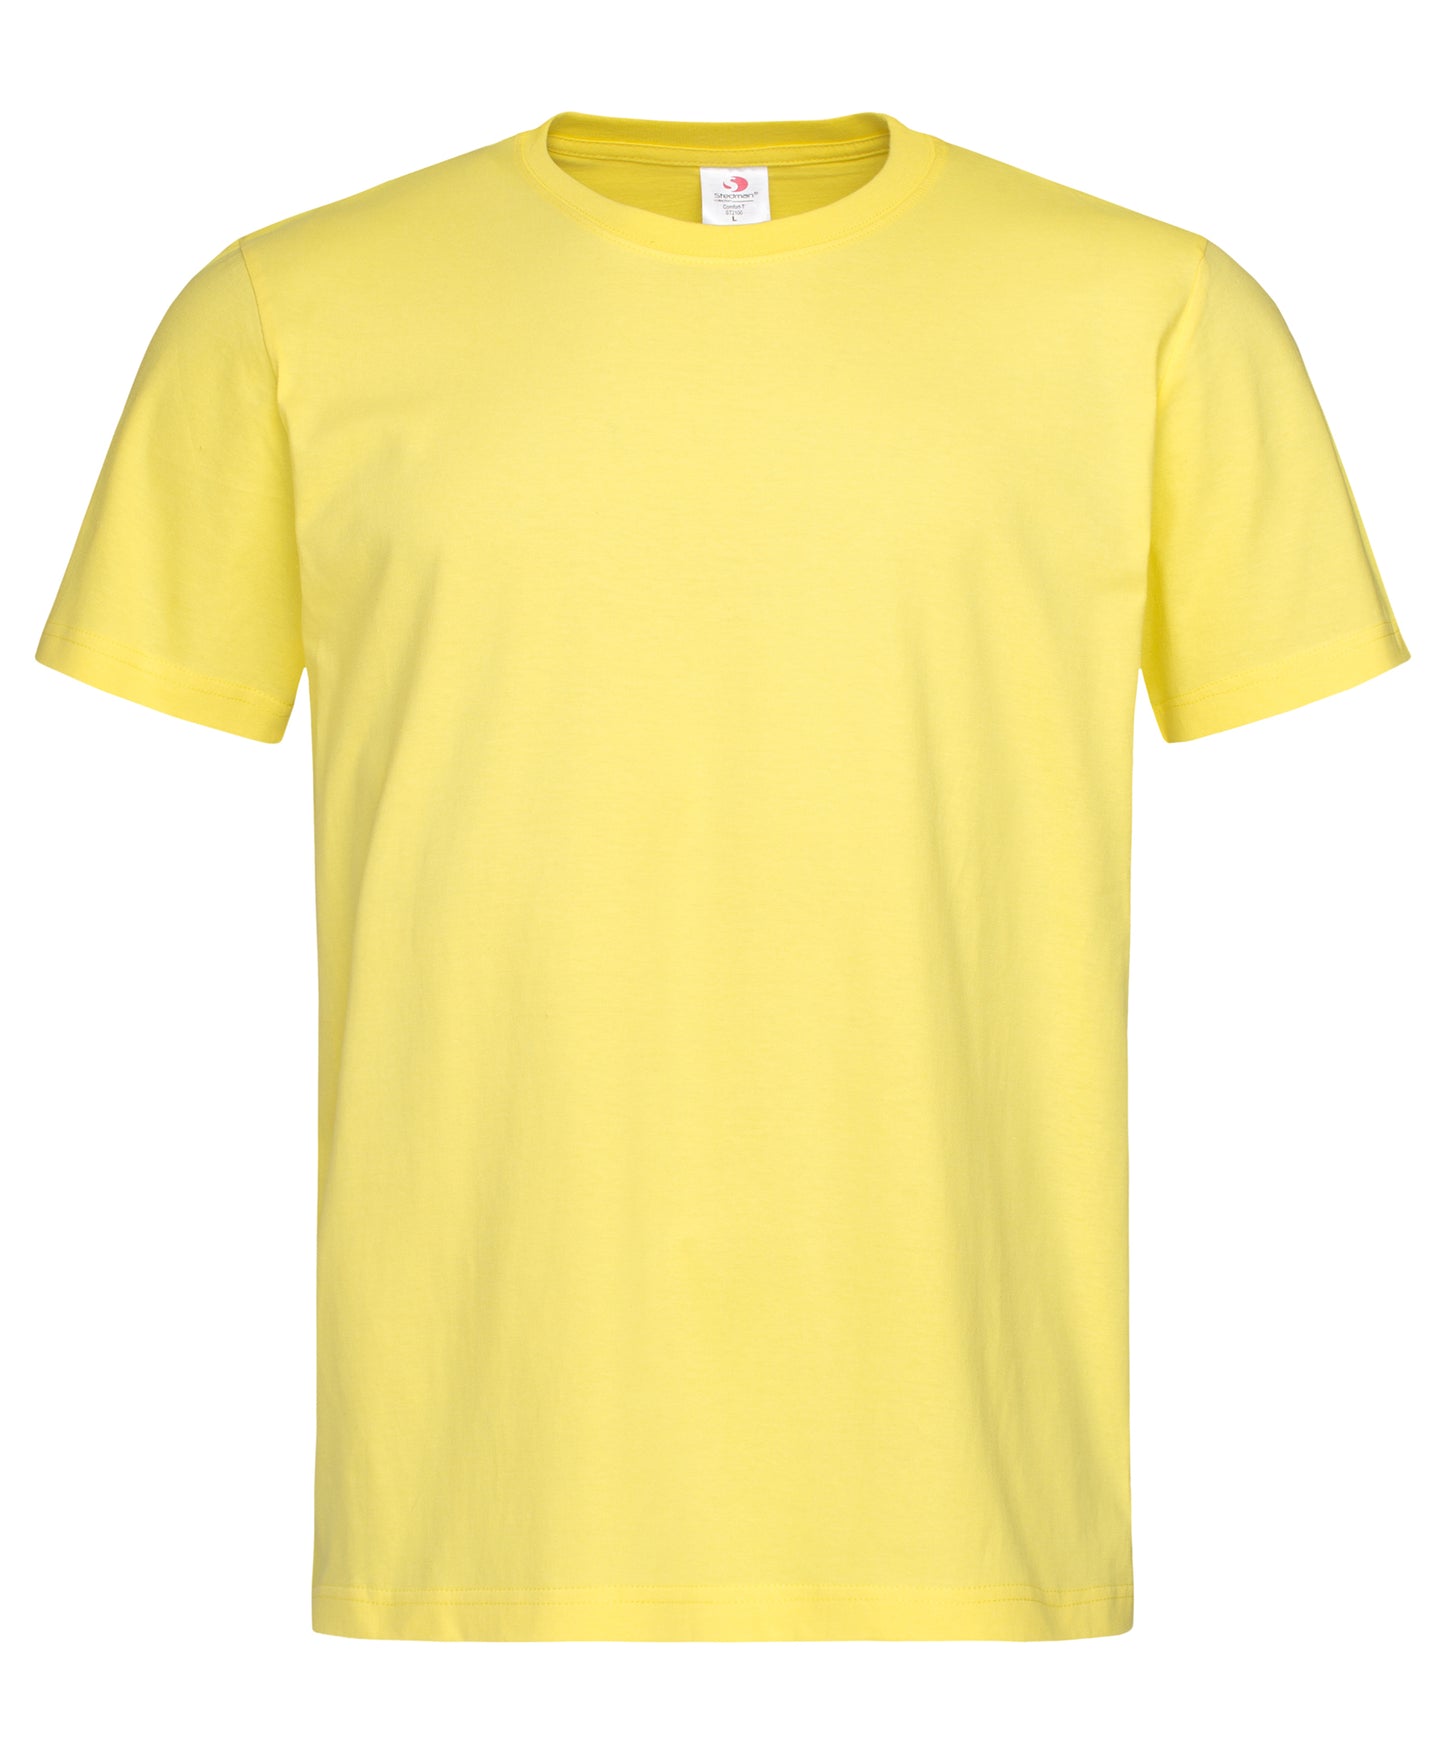 Stedman Comfort T-Shirt Cotton S-5XL